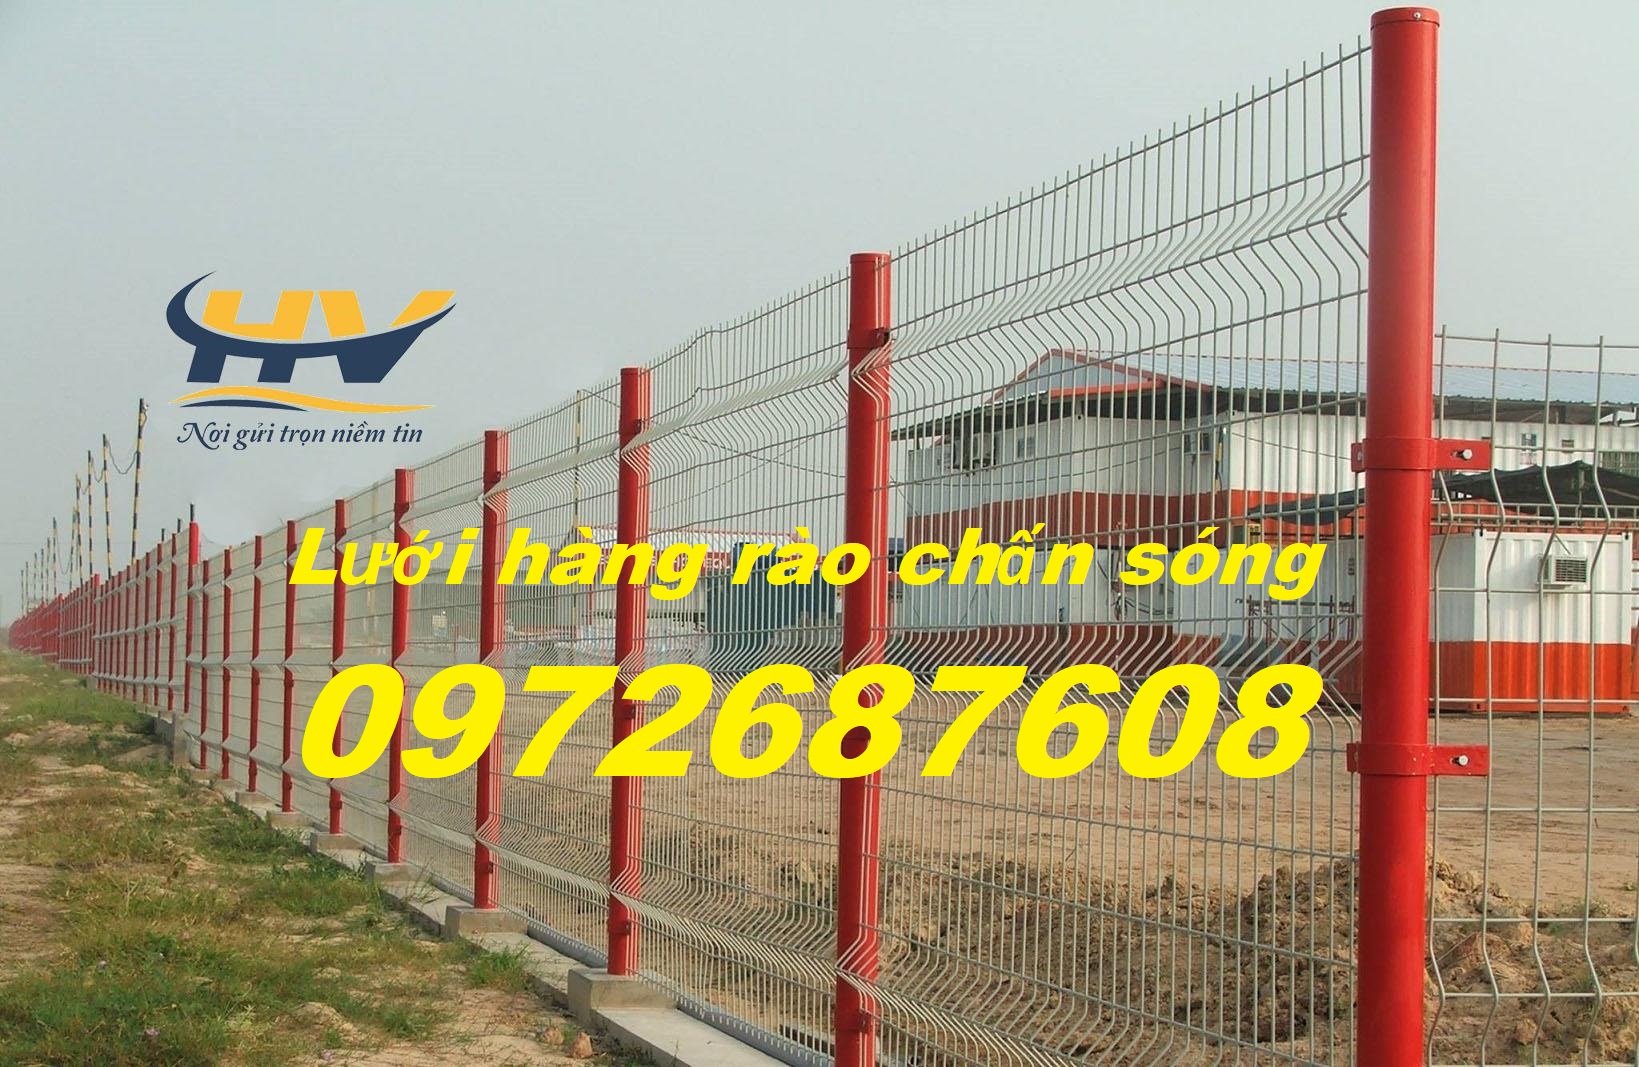 Hàng rào lưới thép mạ kẽm, hàng rào thép, lưới hàng rào tại TP HCM